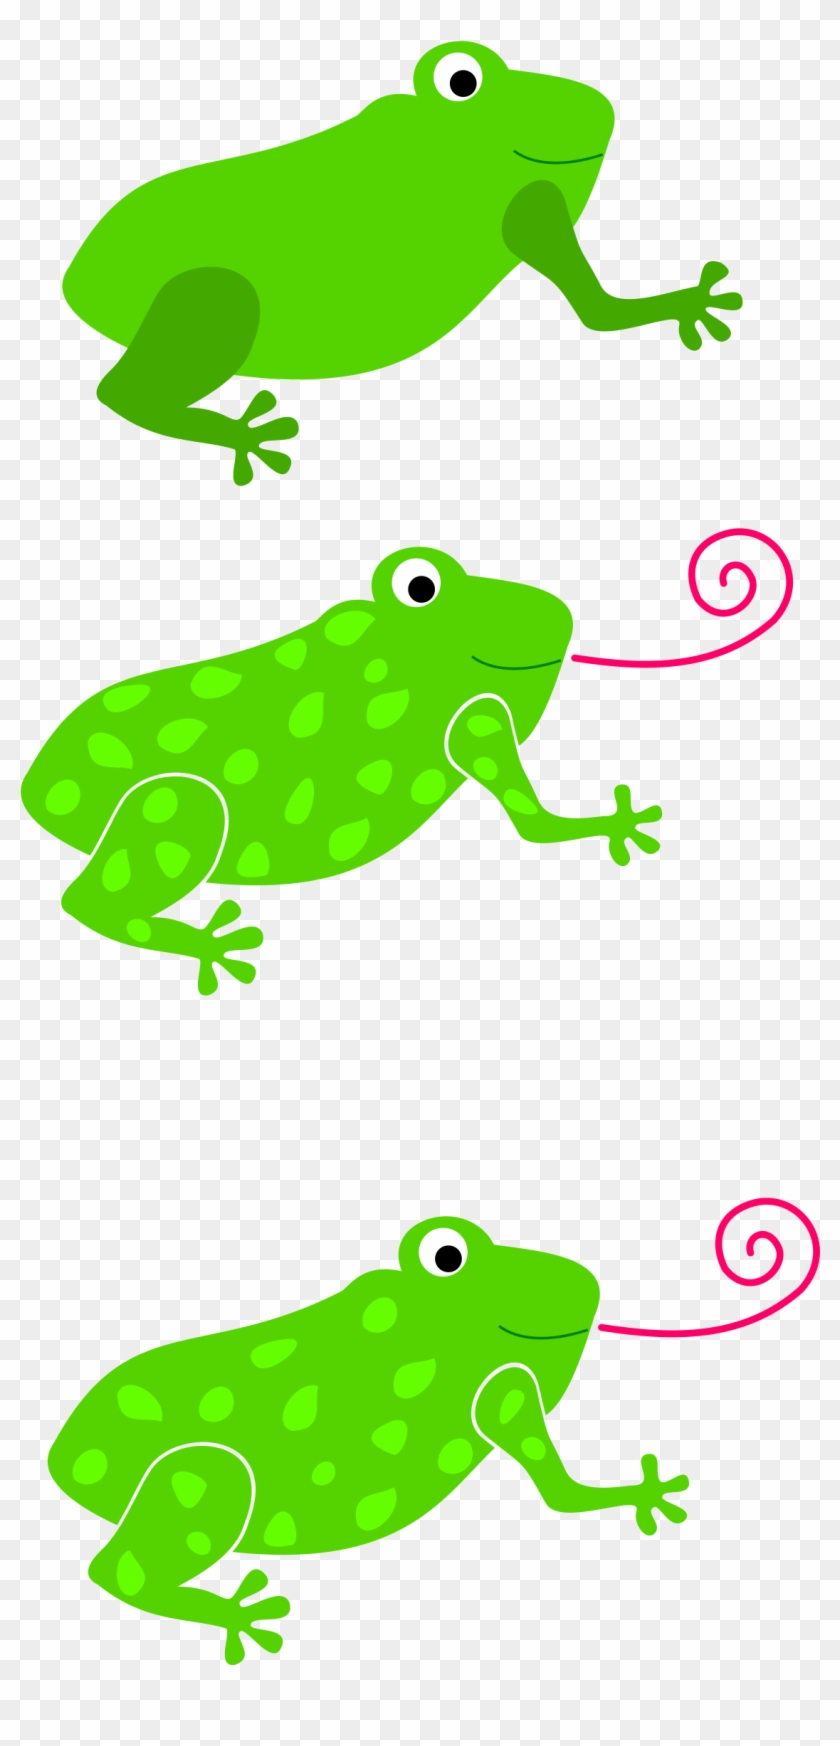 Tree Frog Tongue Toad Clip Art - Tree Frog Tongue Toad Clip Art #326056